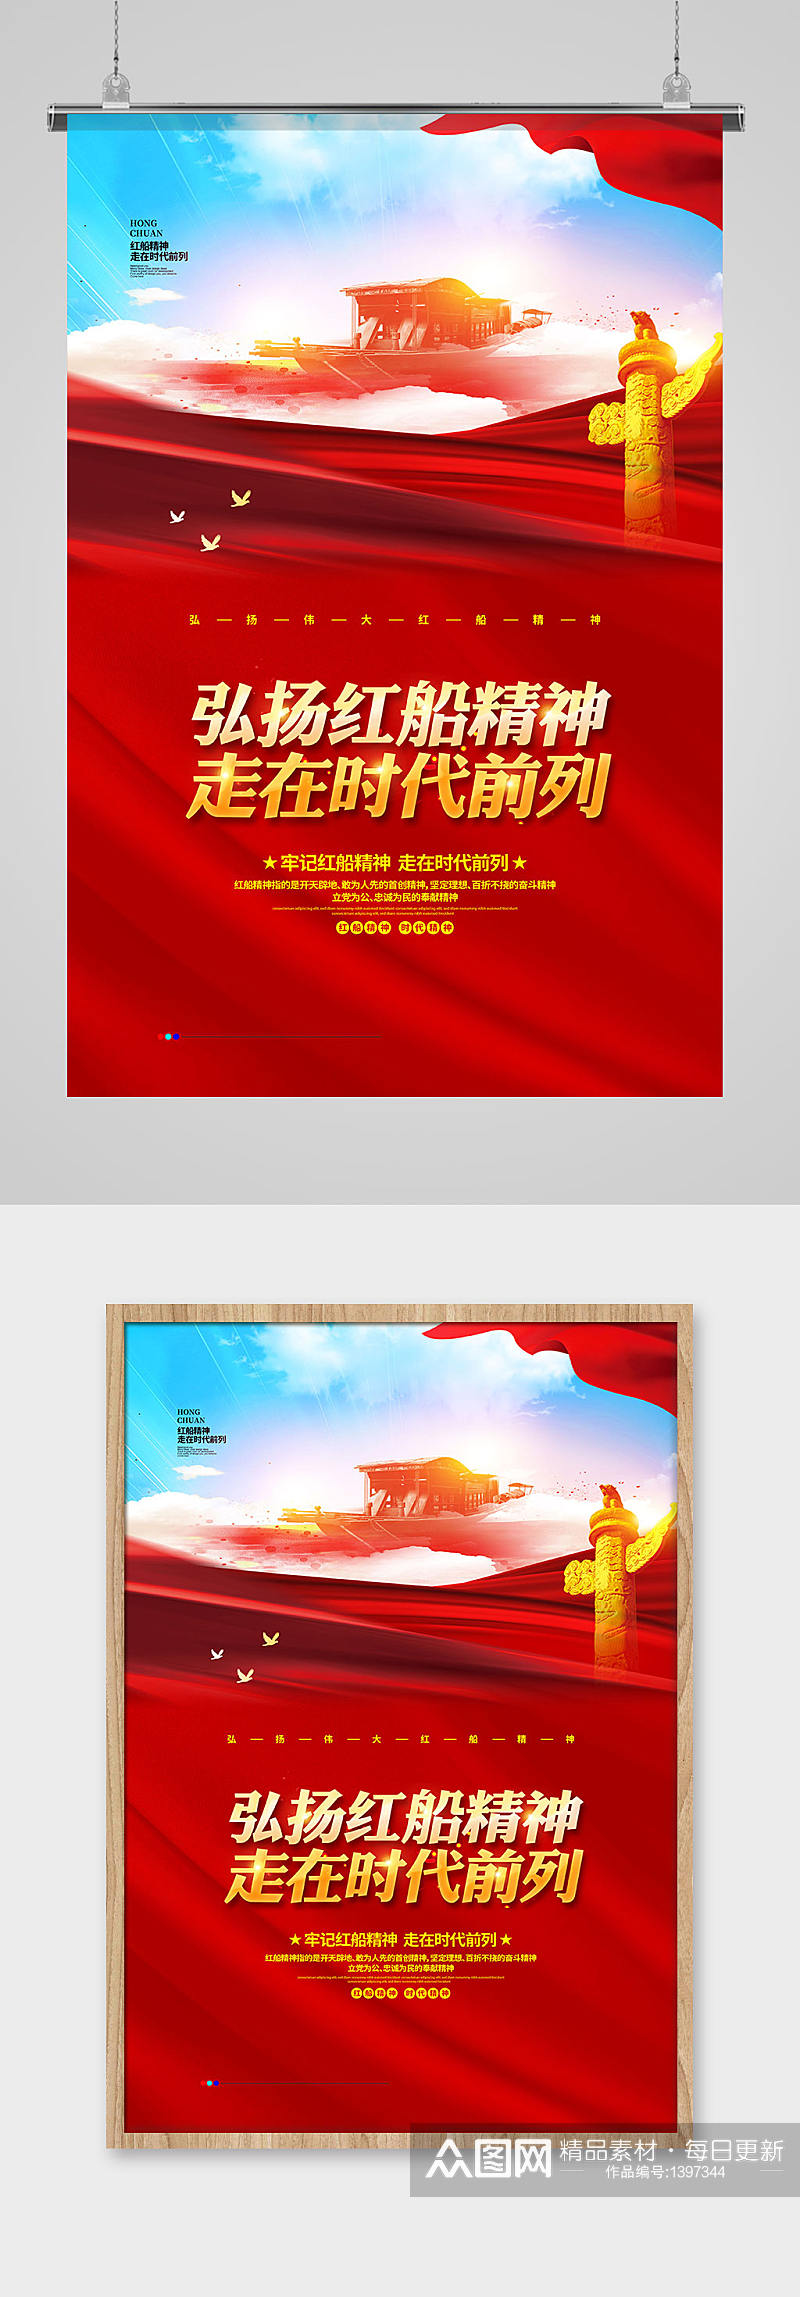 弘扬红船精神走在时代前列党建宣传海报设计素材